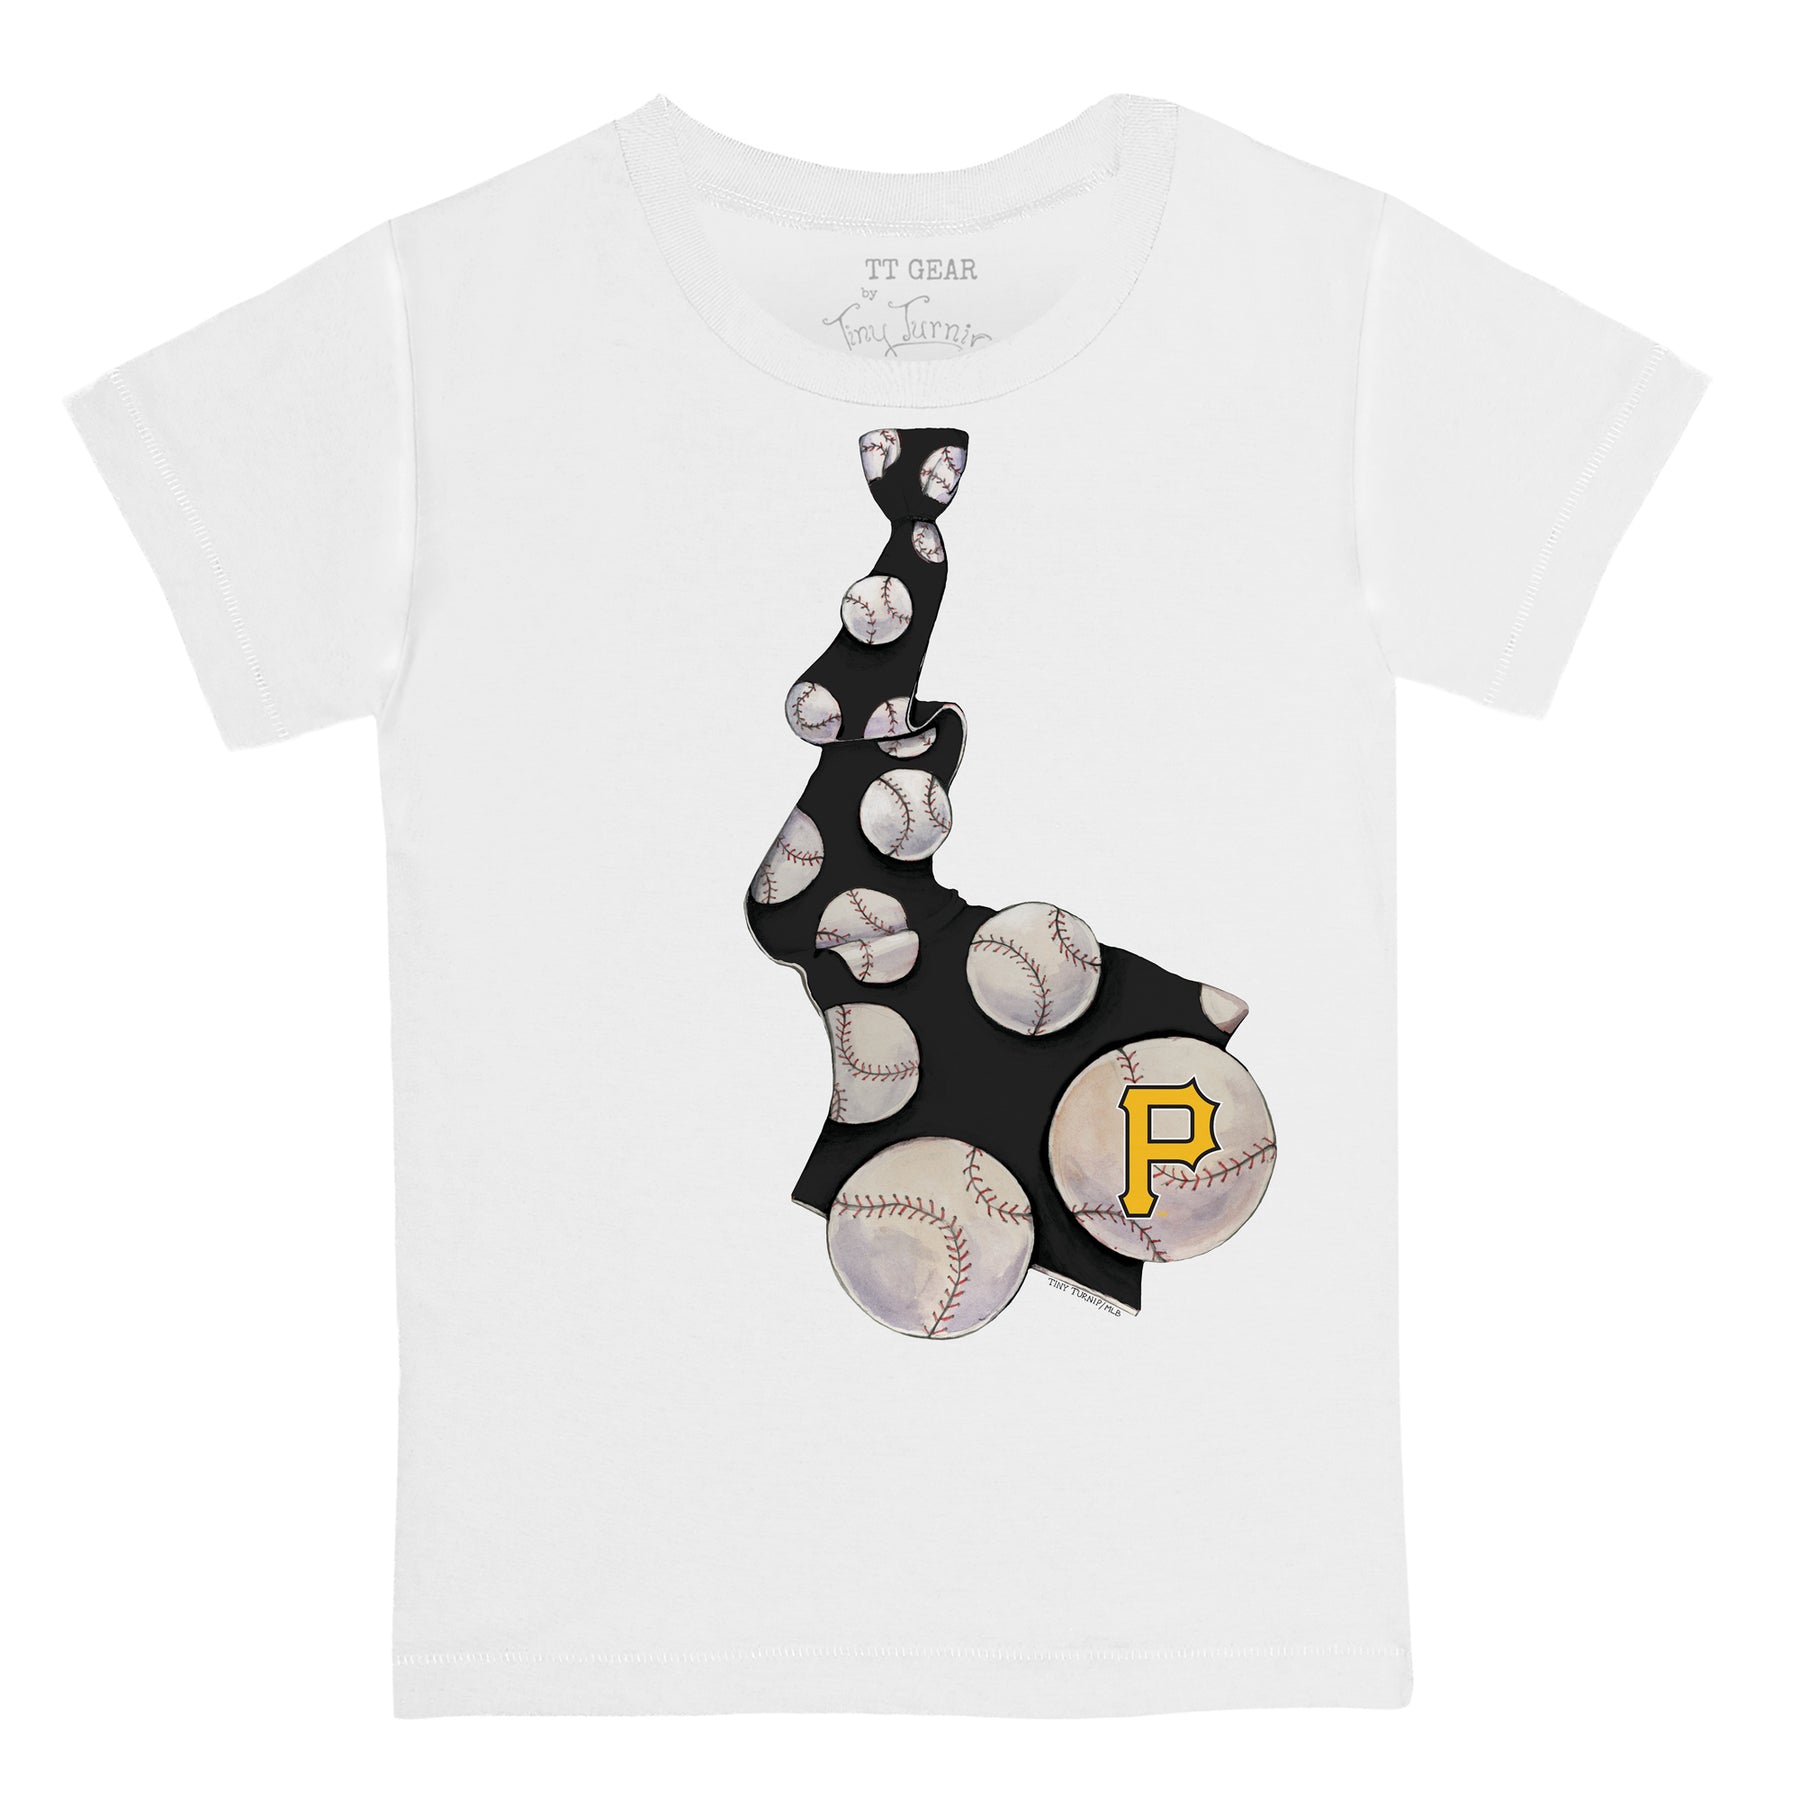 Lids Pittsburgh Pirates Tiny Turnip Youth Stitched Baseball T-Shirt - White